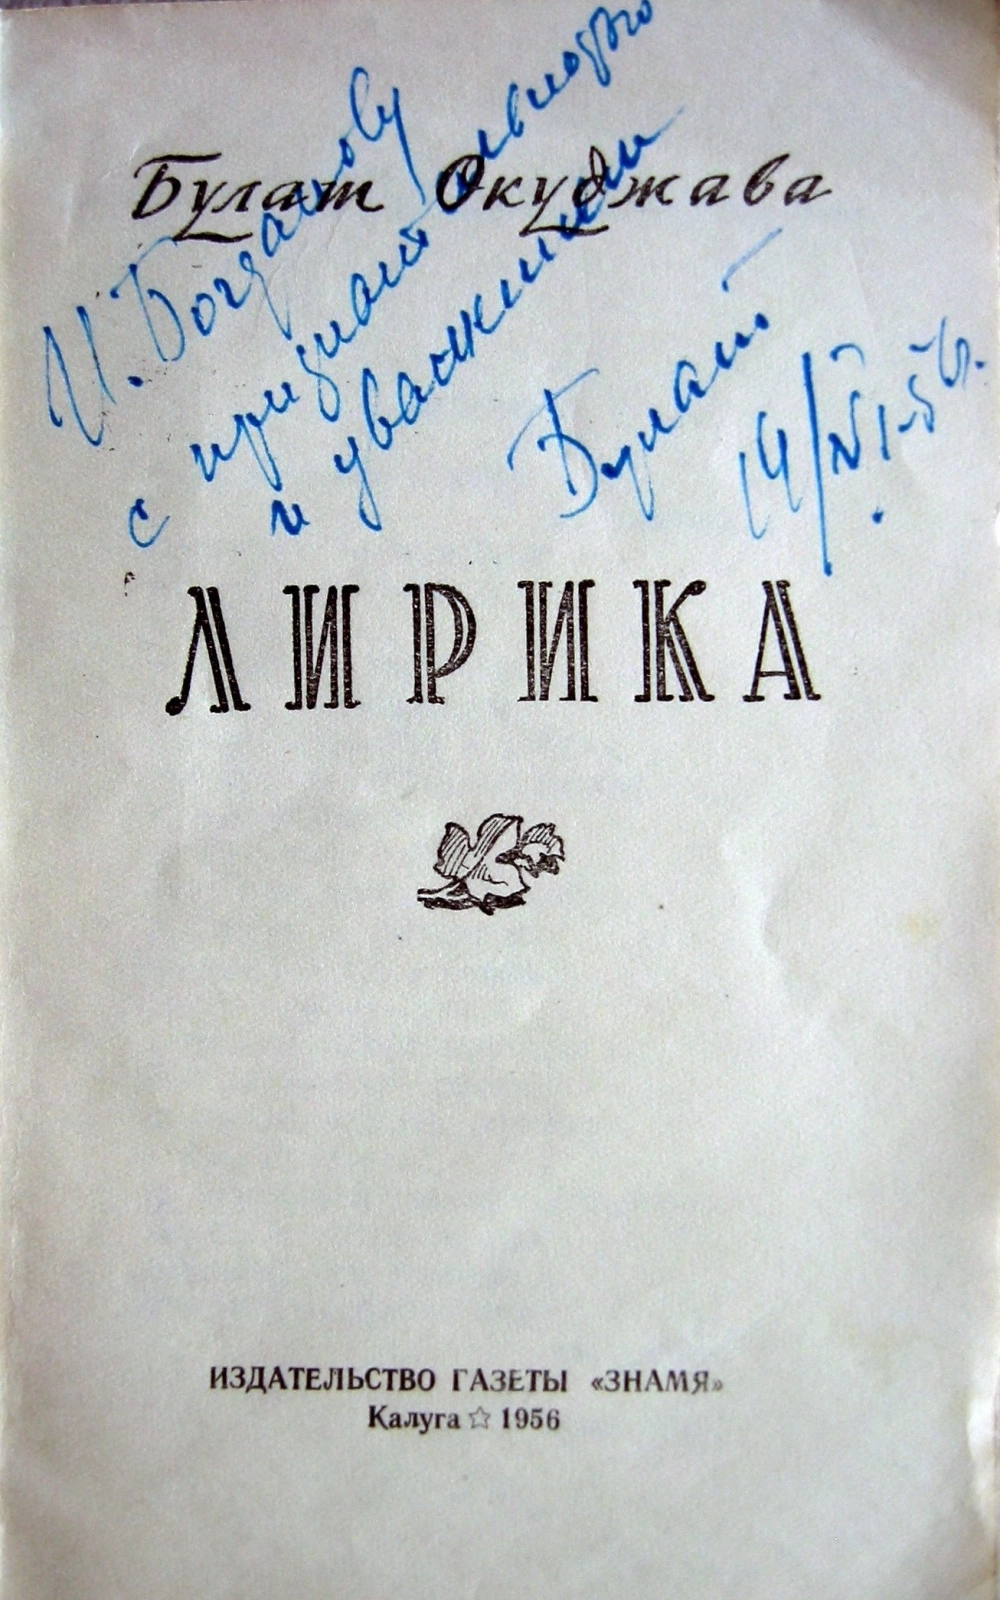 Первая книга стихов Булата Окуджавы «Лирика» с его автографом. Калуга. 14.06.1956 г.